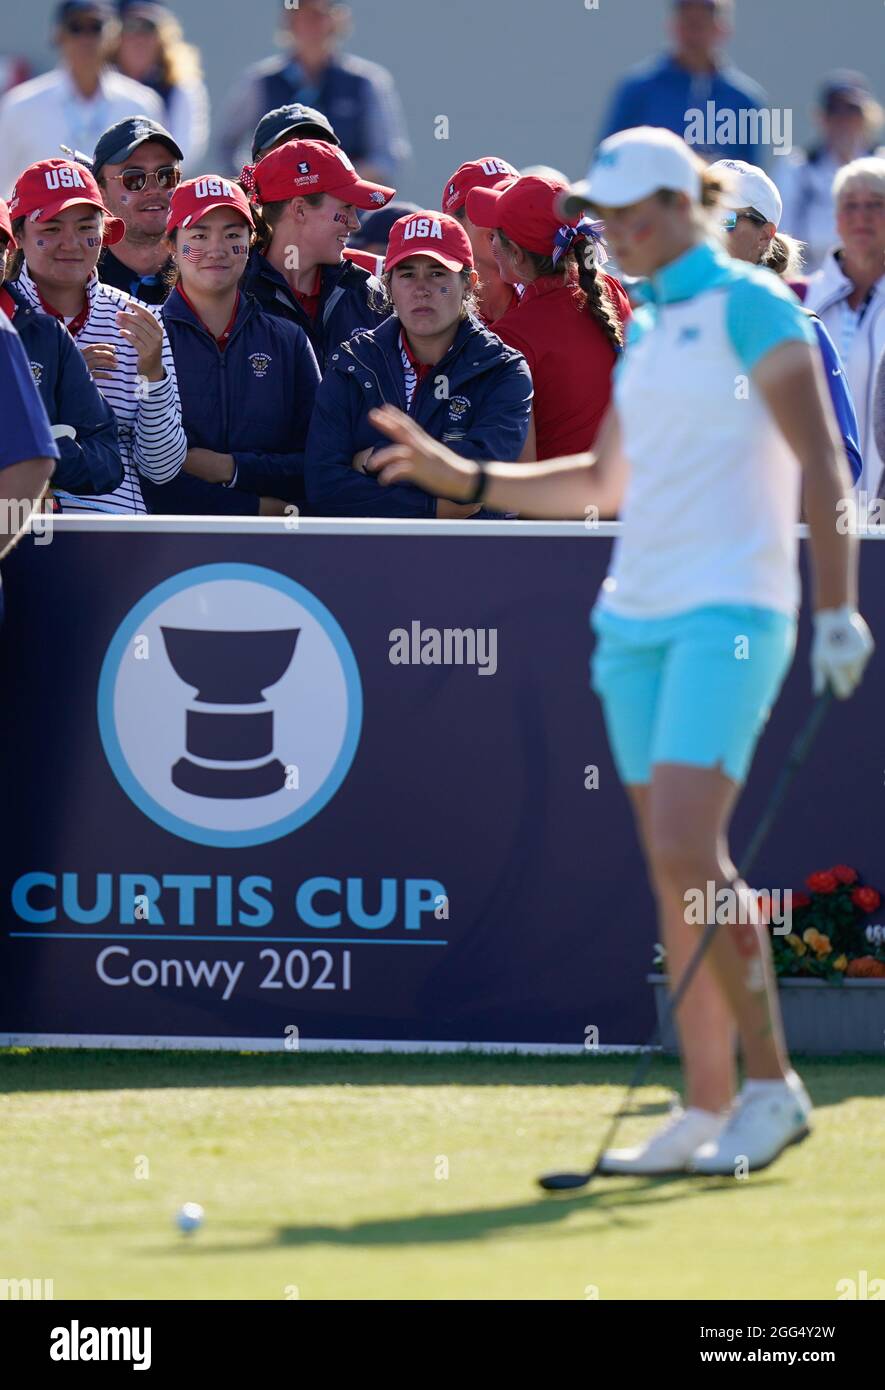 Das Team USA beobachtet, wie der letzte Tag während des Curtis Cup Day 3 2021 beginnt - Singles im Conwy Golf Club, Conwy, Wales am Samstag, den 28. August 2021. (Ste Stockfoto